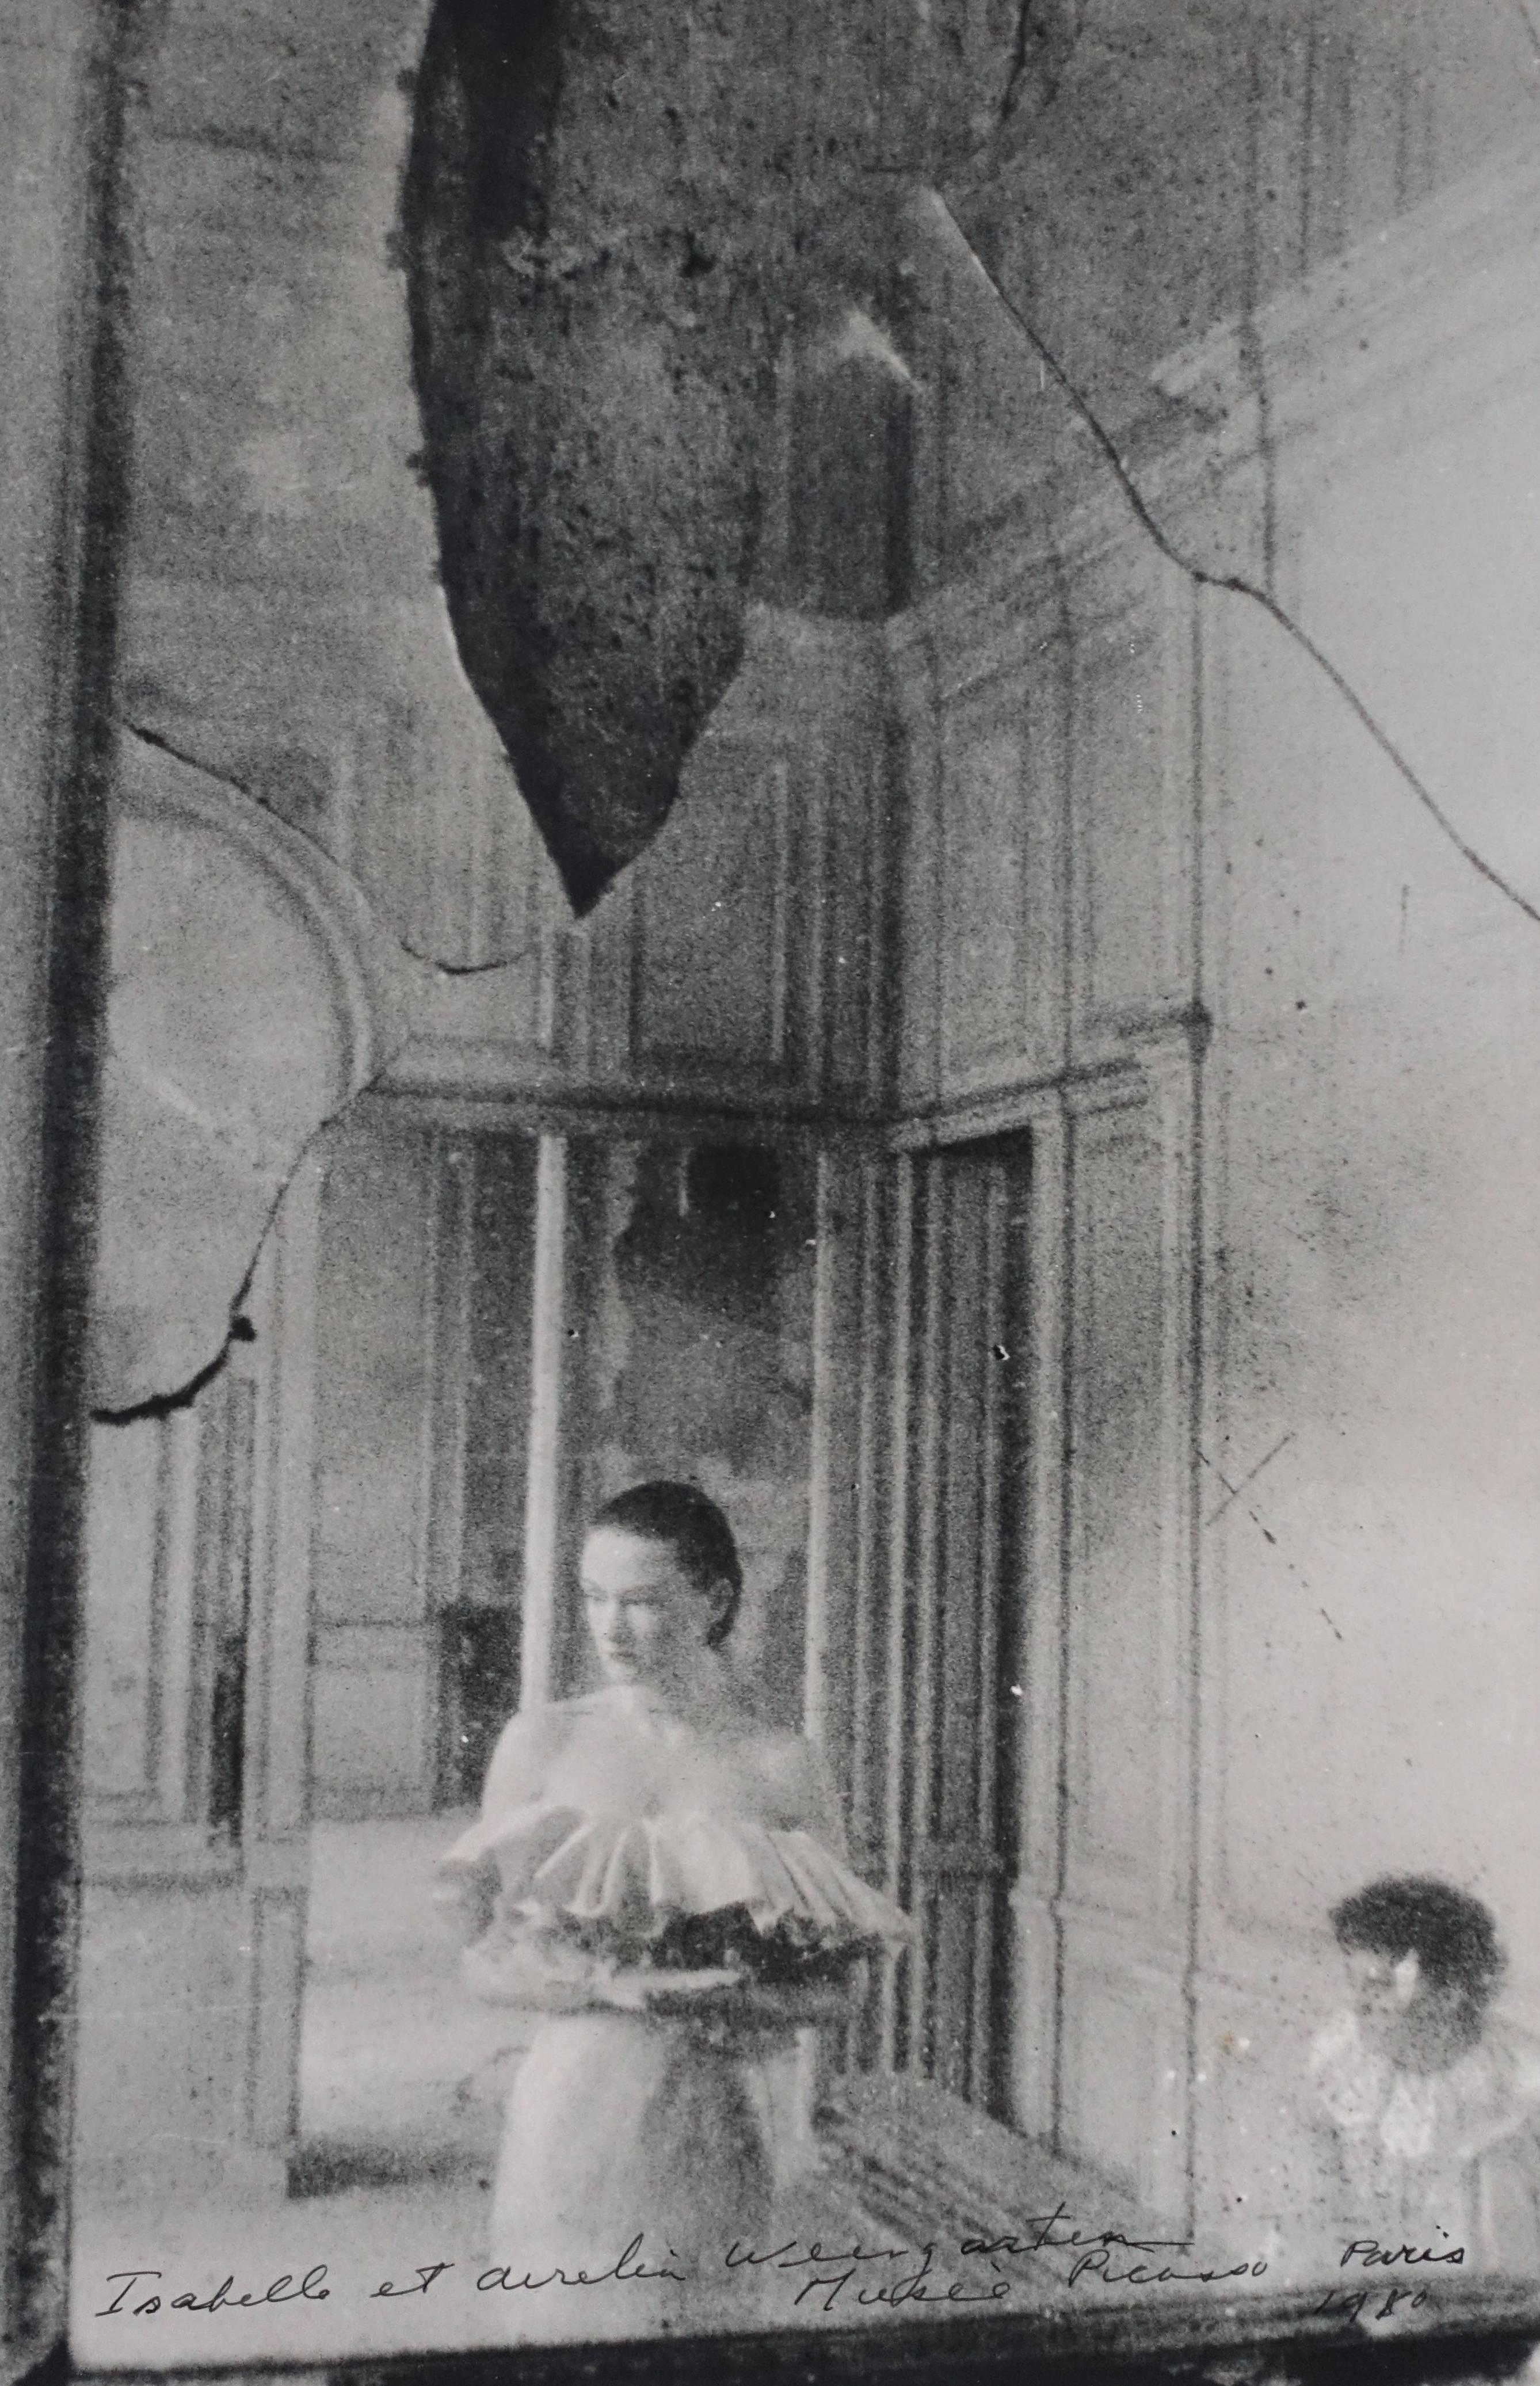 Deborah Turbeville Black and White Photograph - Isabelle et Aurelin, Weingarten Musée Picasso, Paris 1980